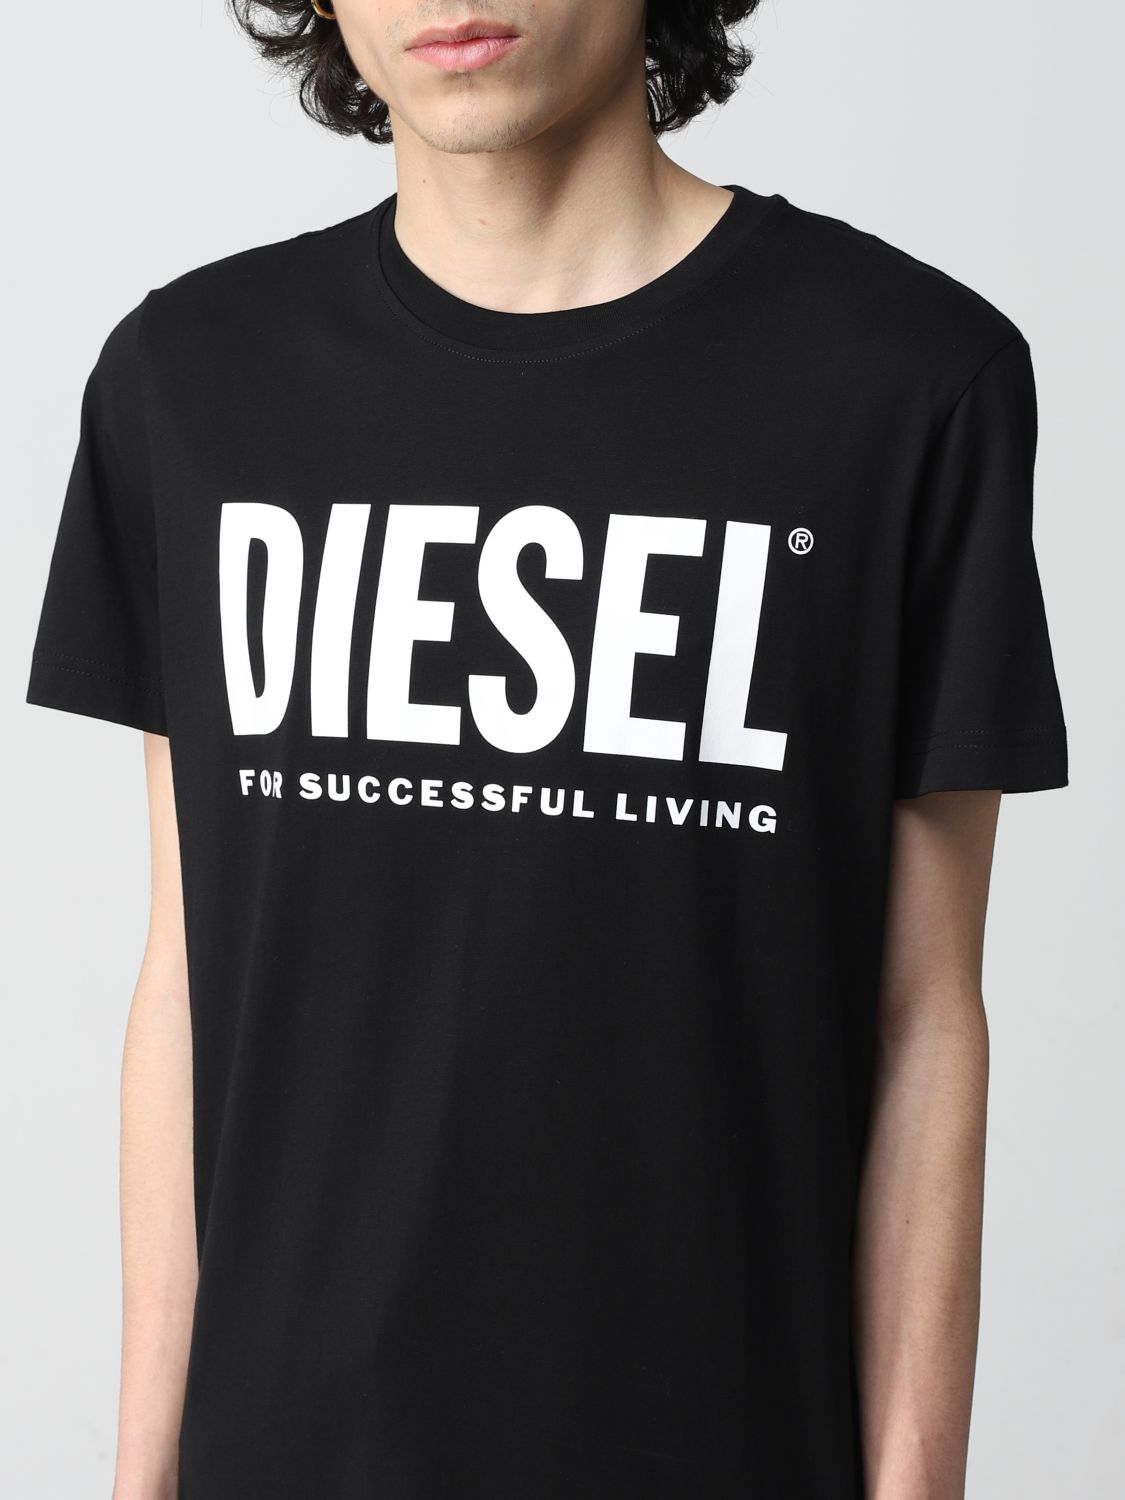 DIESEL: Tシャツ メンズ - ブラック | Tシャツ Diesel A028770AAXJ 